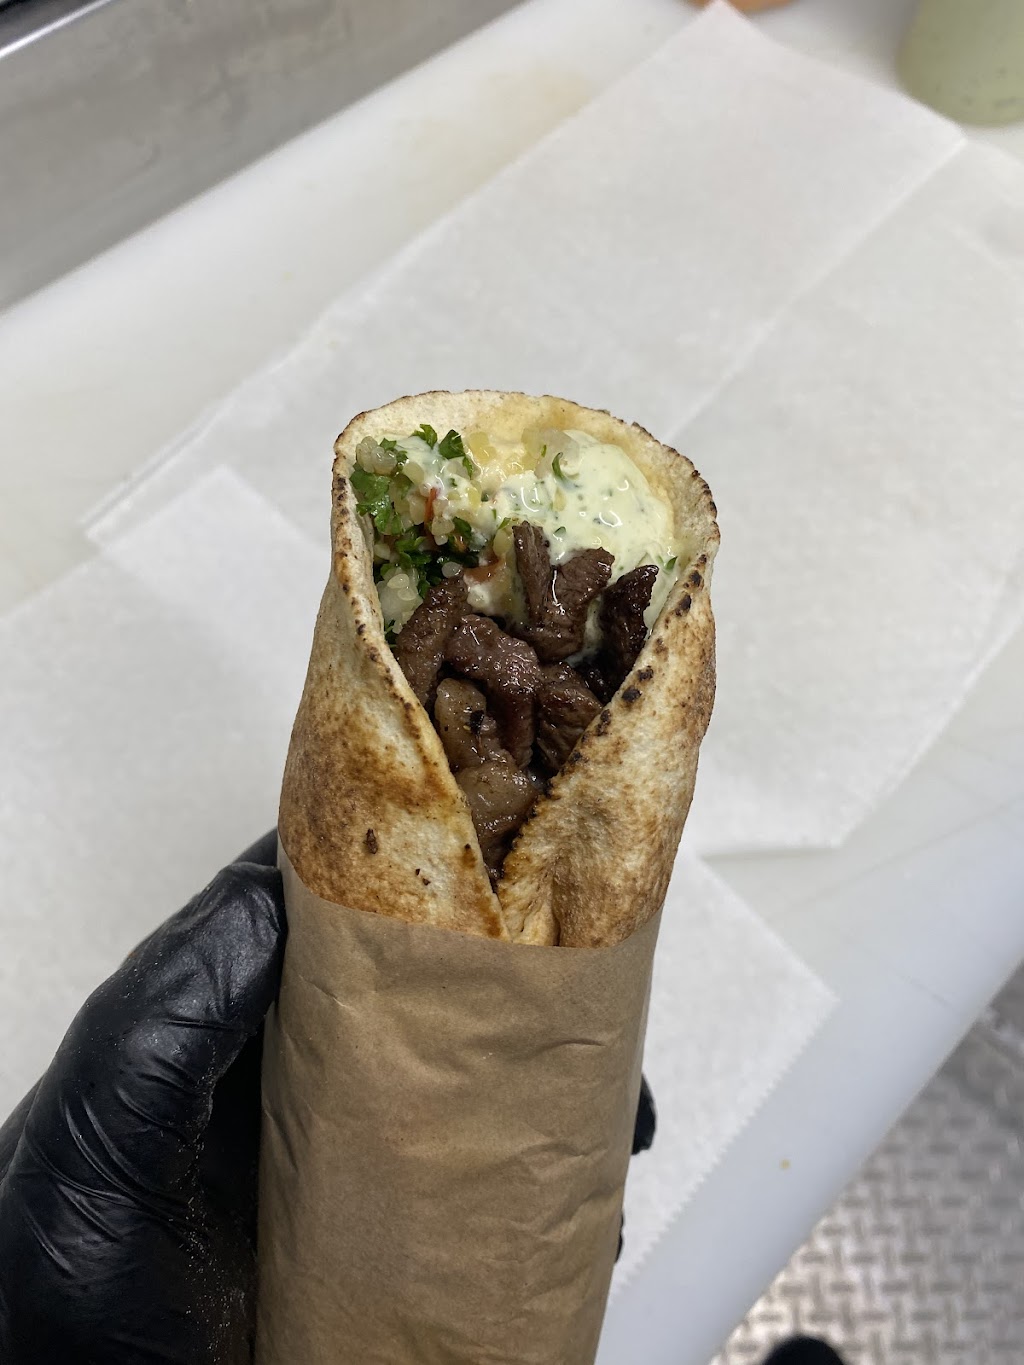 El Rey del Shawarma | 15 N 5th St, Haines City, FL 33844, USA | Phone: (689) 226-1826